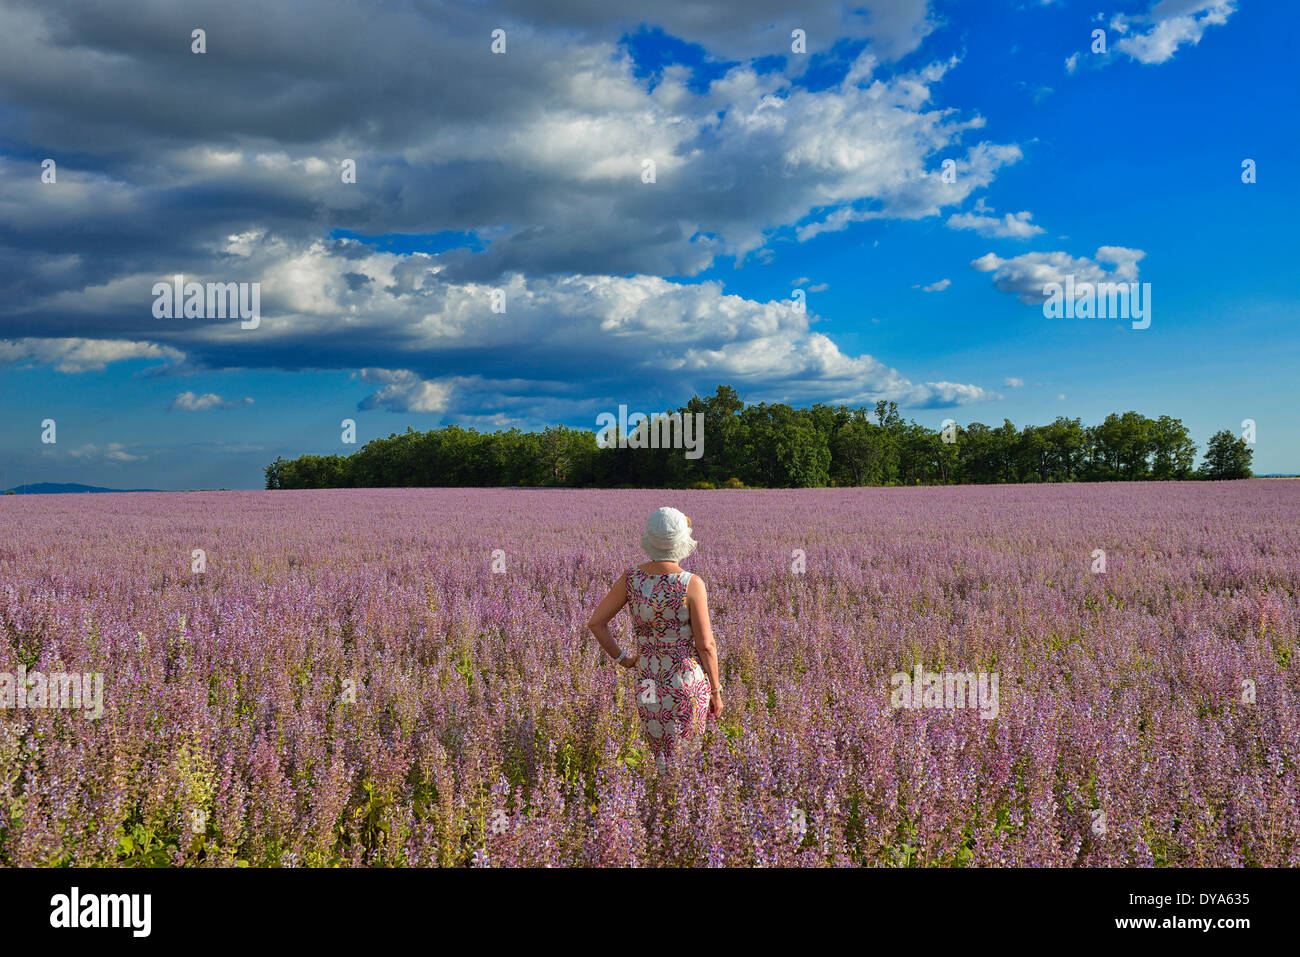 Francia, Provenza, paisaje, mujer, flores, flor, verano, francés, campo, lanzado Foto de stock